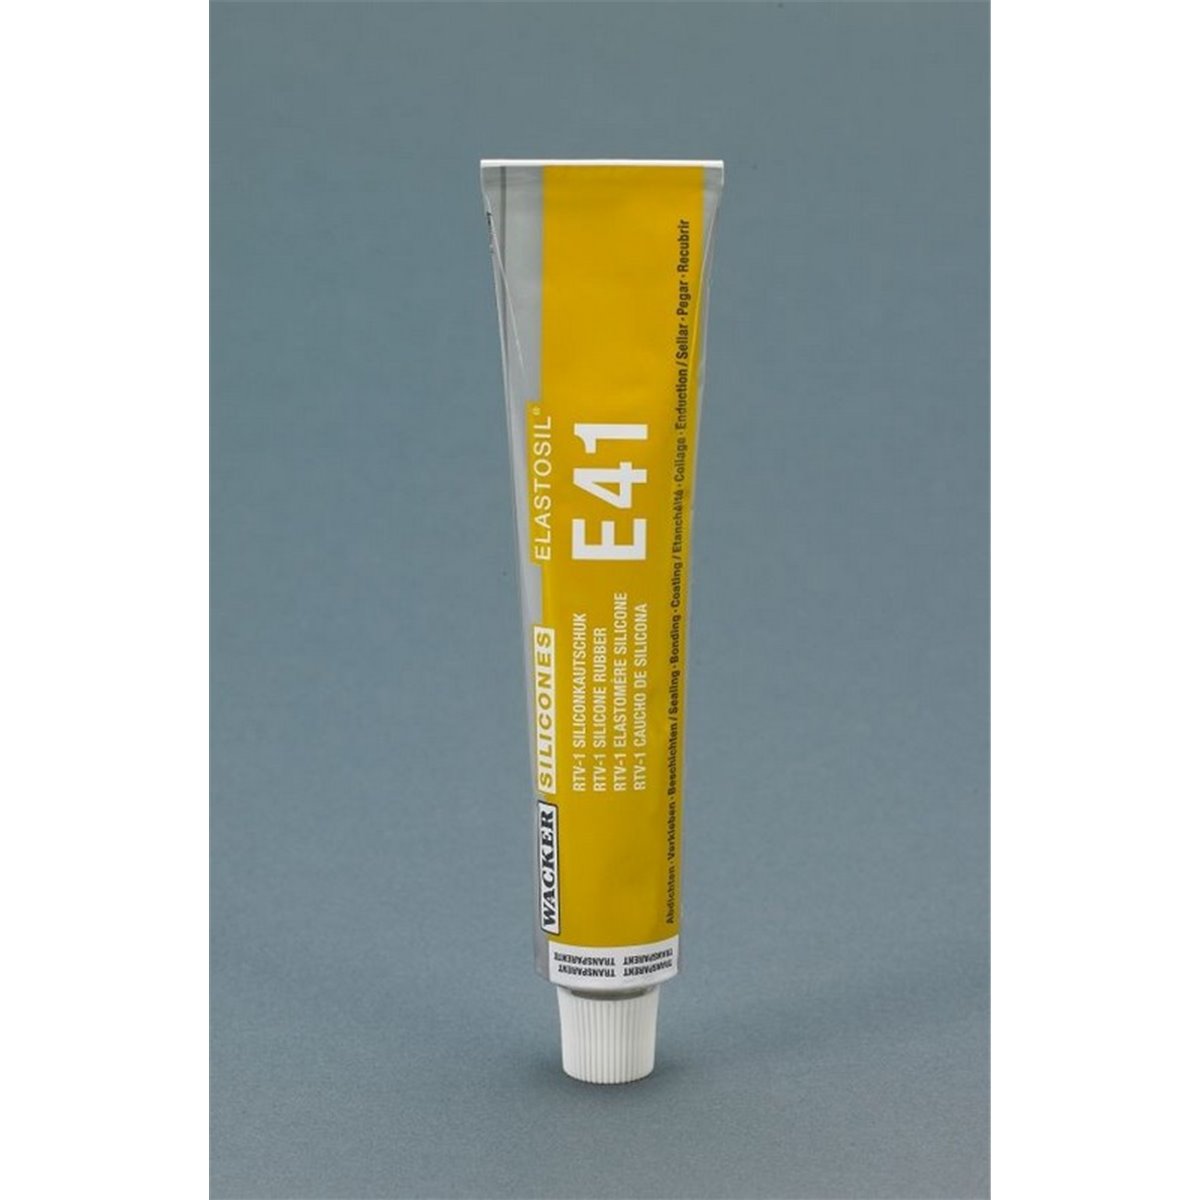 E41 Silicone Adhesive - The Rubber Company